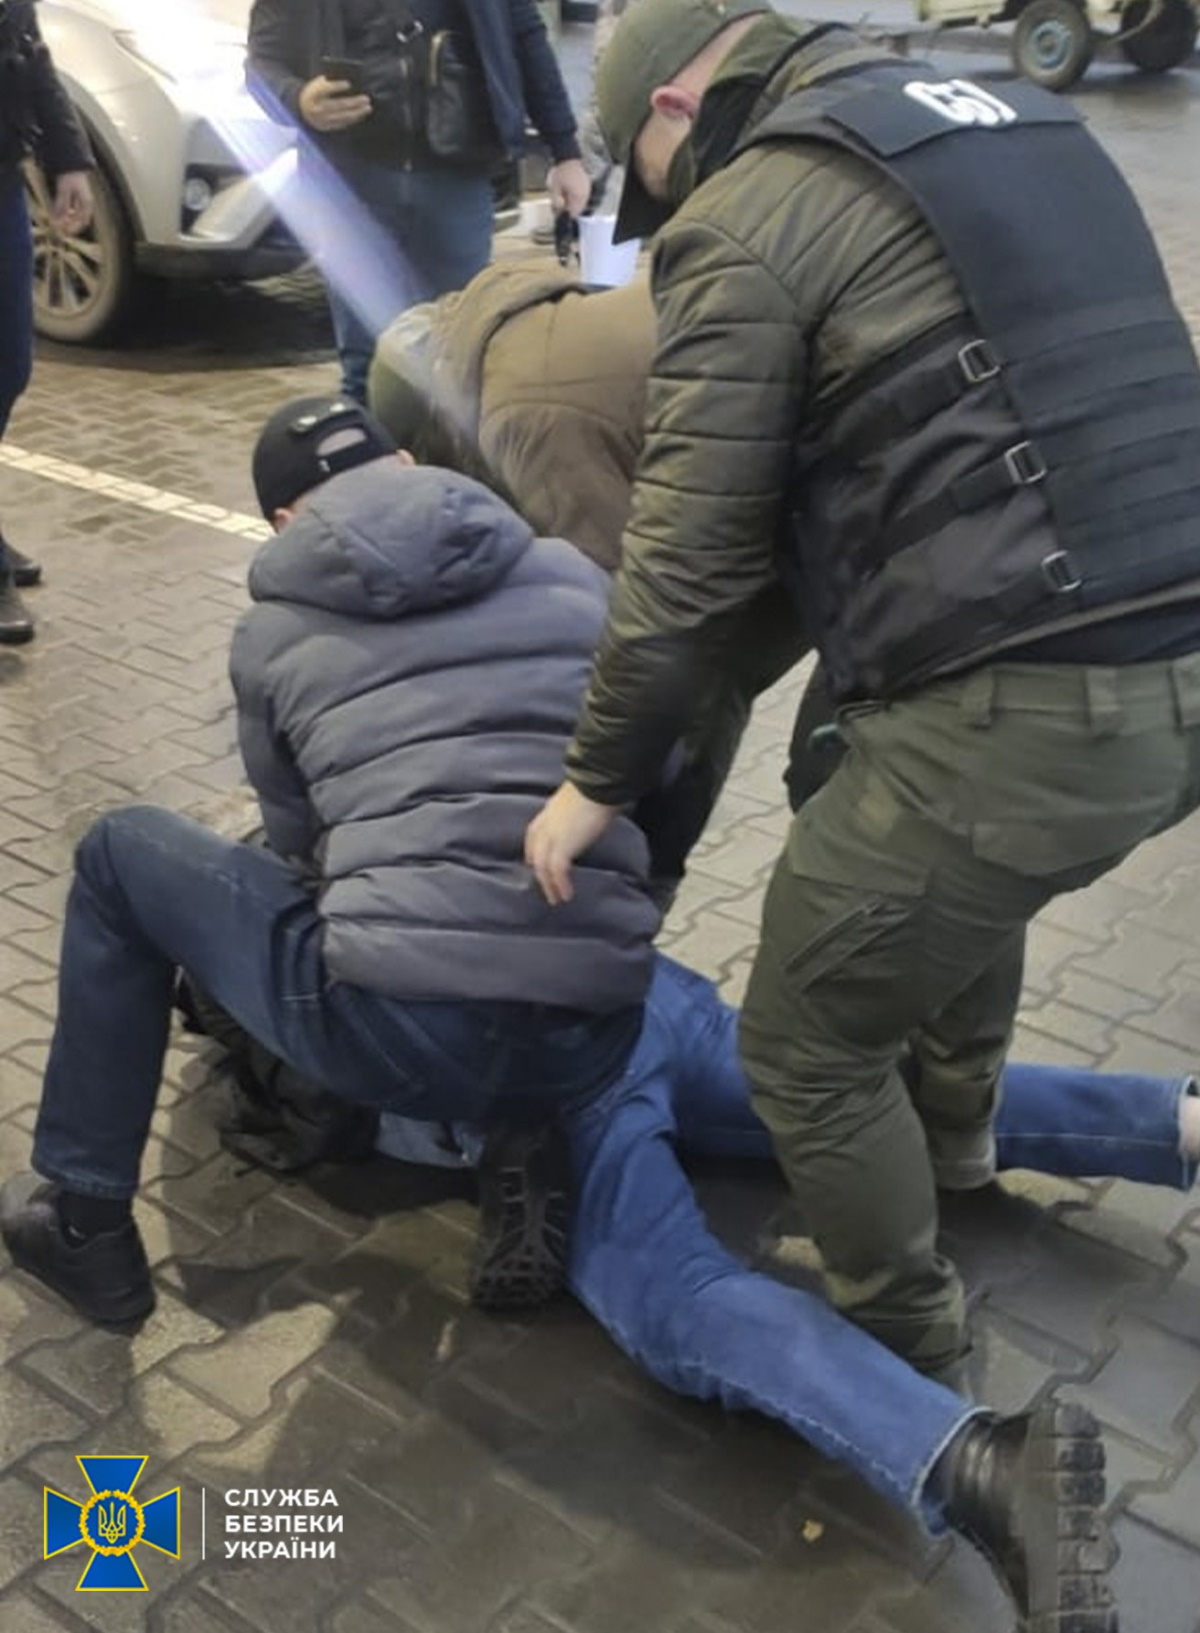 Правоохранители задержали злоумышленника во время передачи ему 70 тыс. гривен